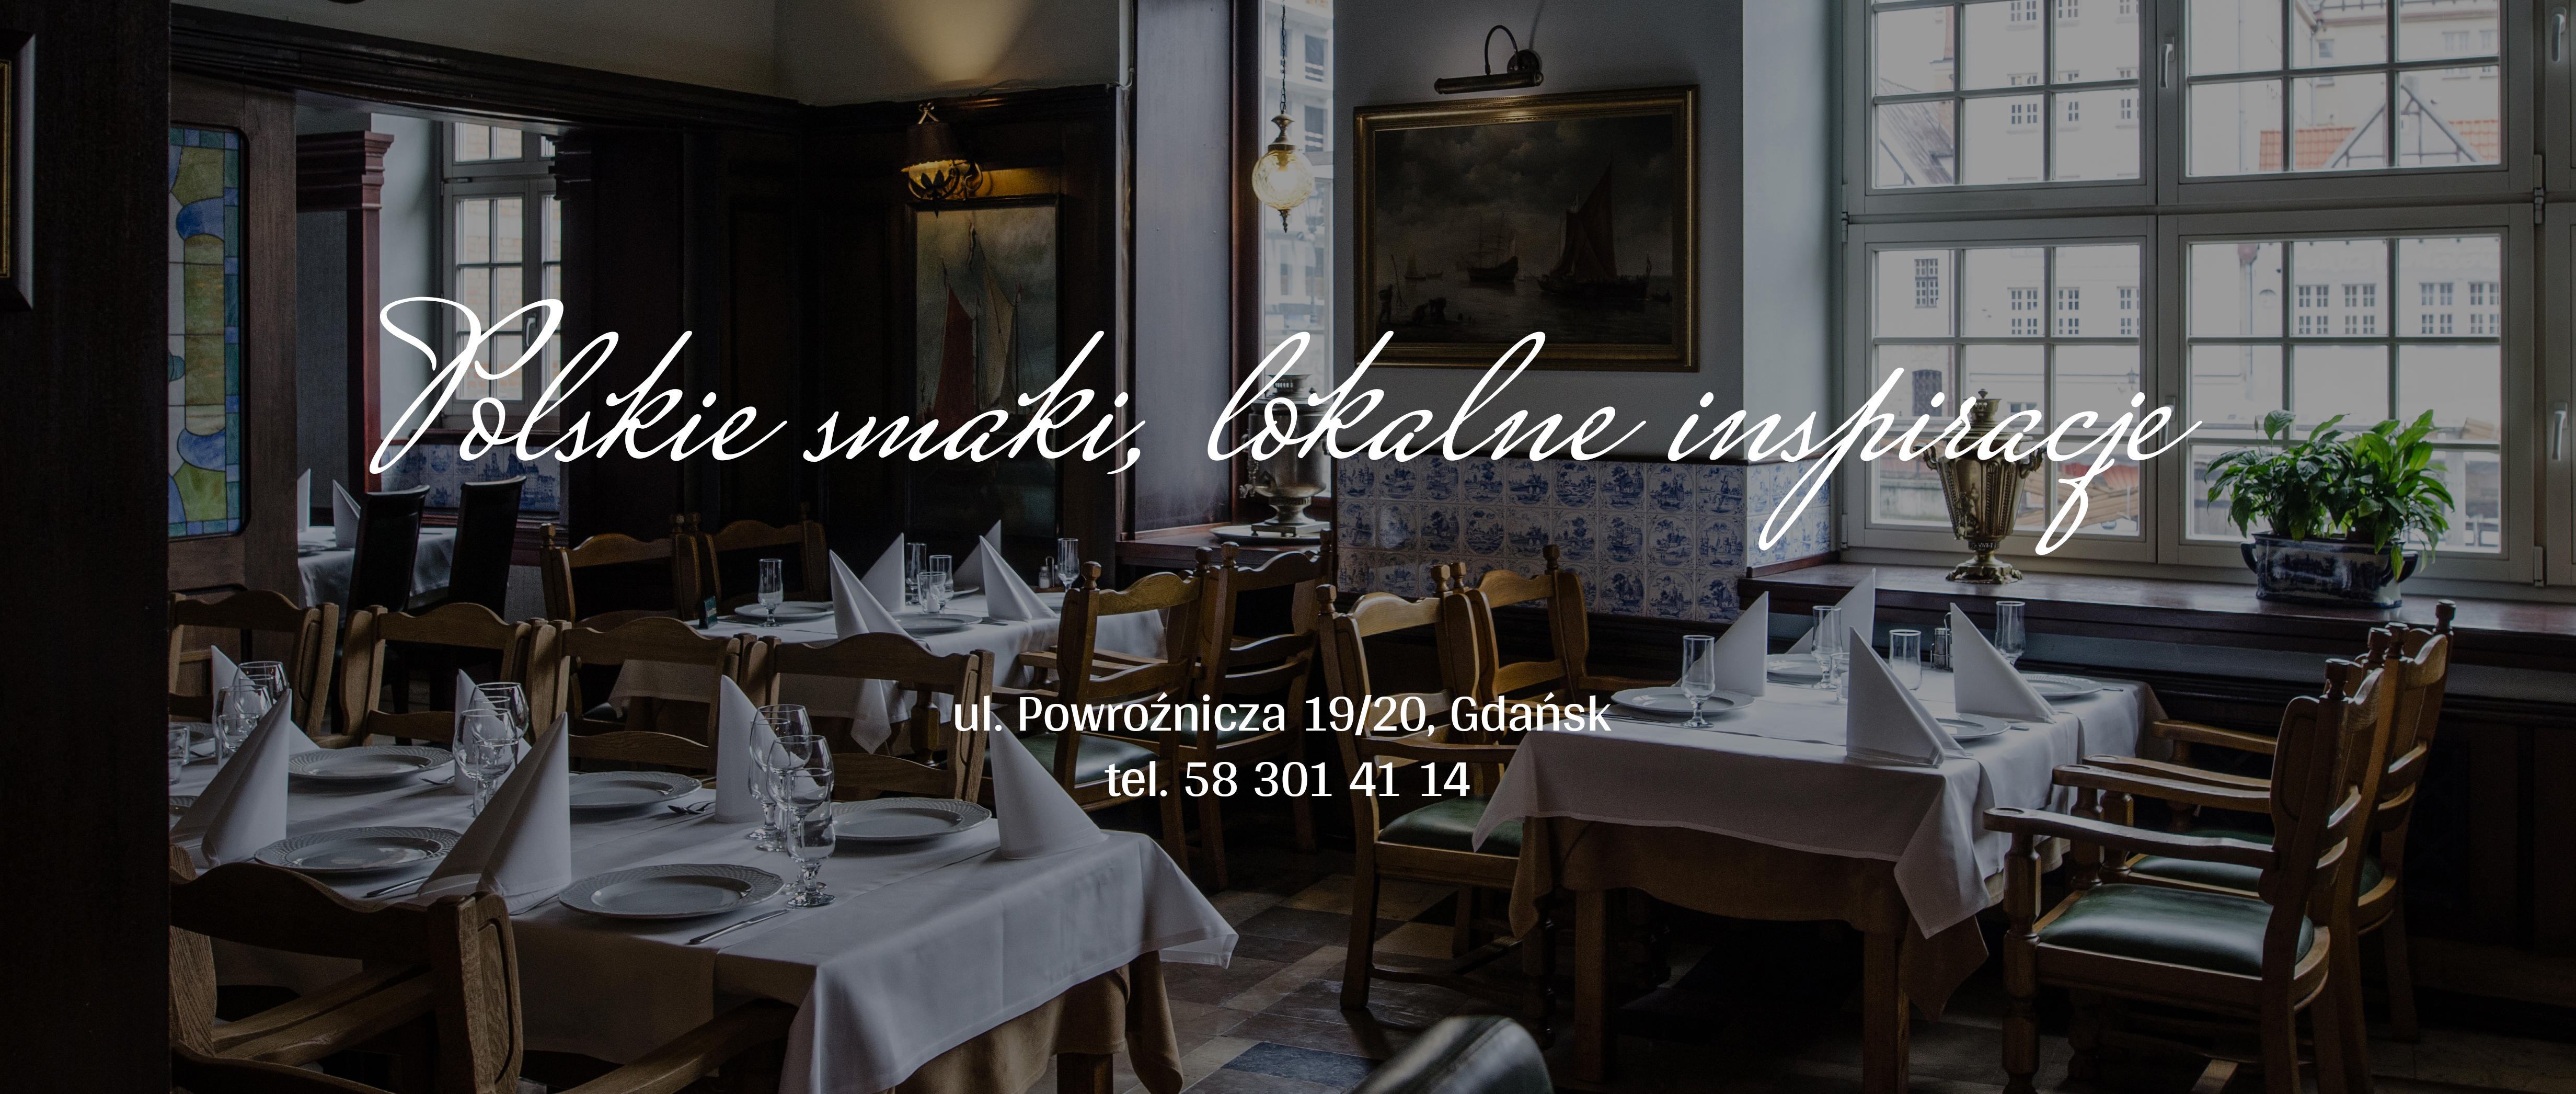 restauracja polska Gdańsk